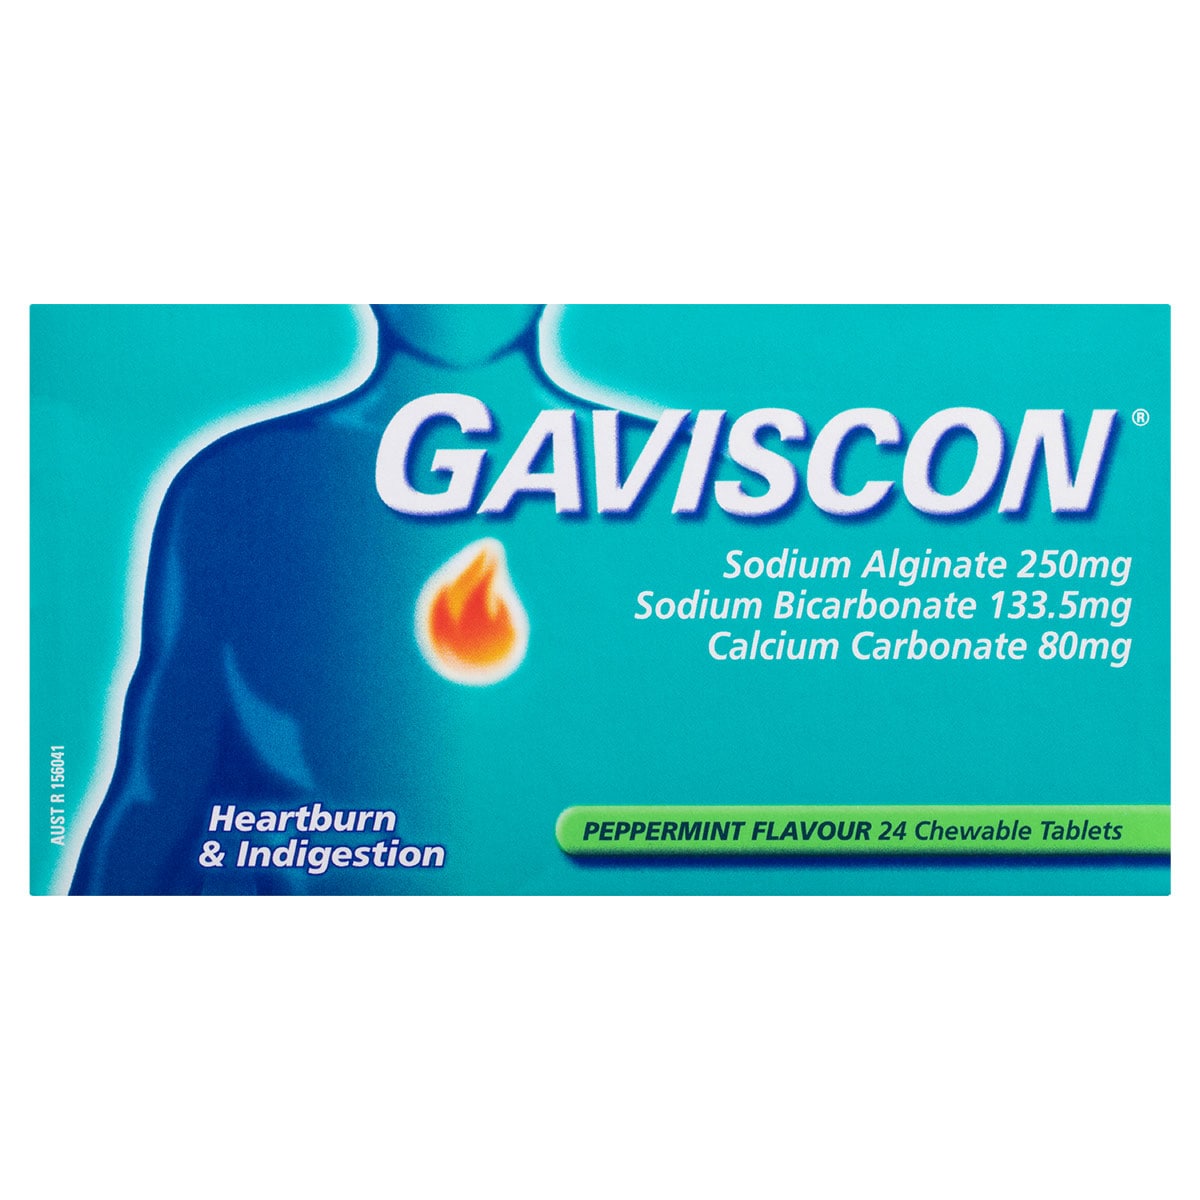 Gaviscon Heartburn & Indigestion Peppermint 24 Chewable Tablets